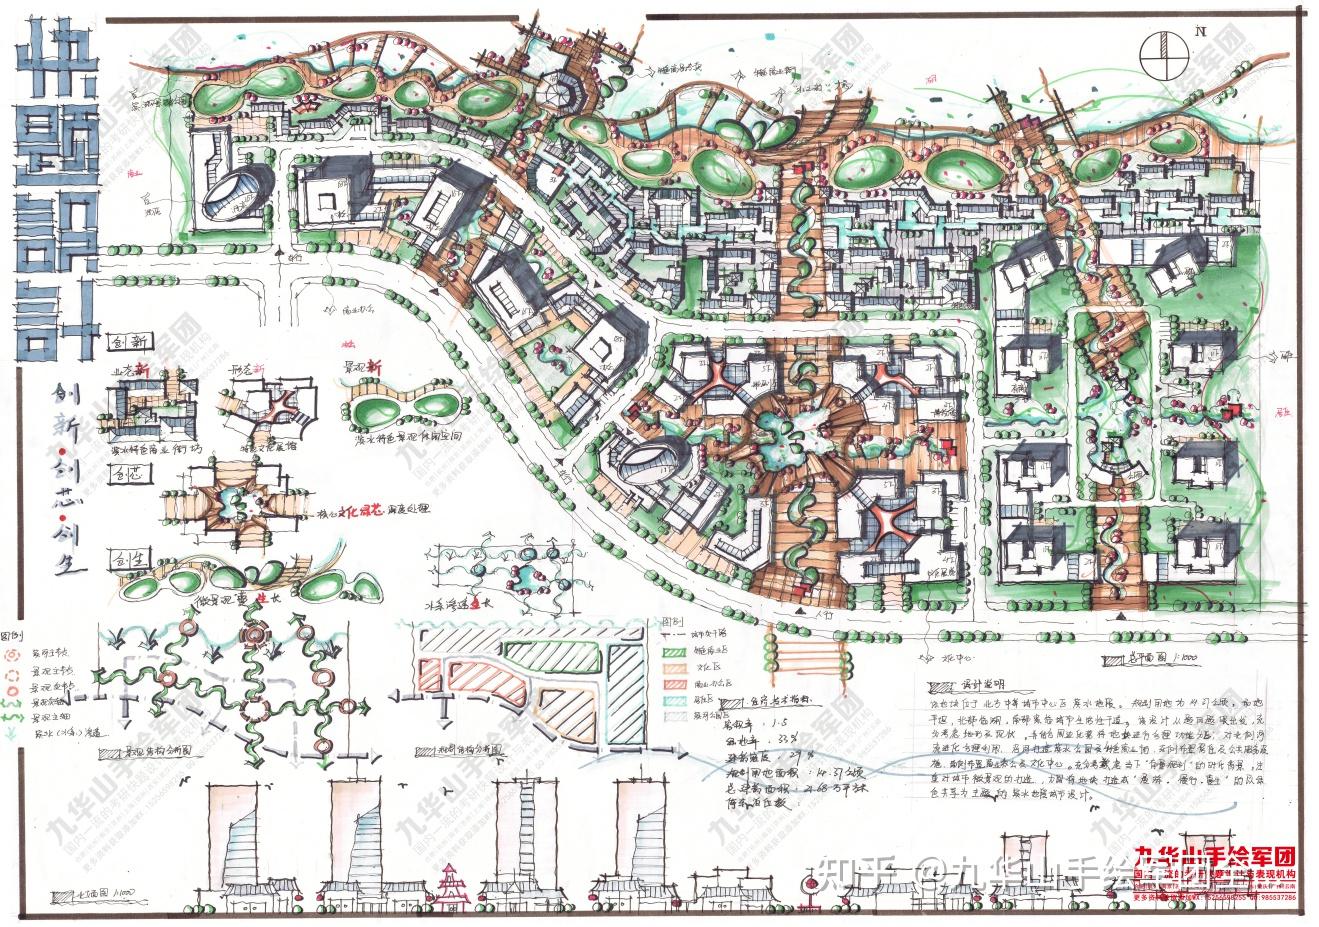 九华山手绘军团城乡规划快题分析第二波